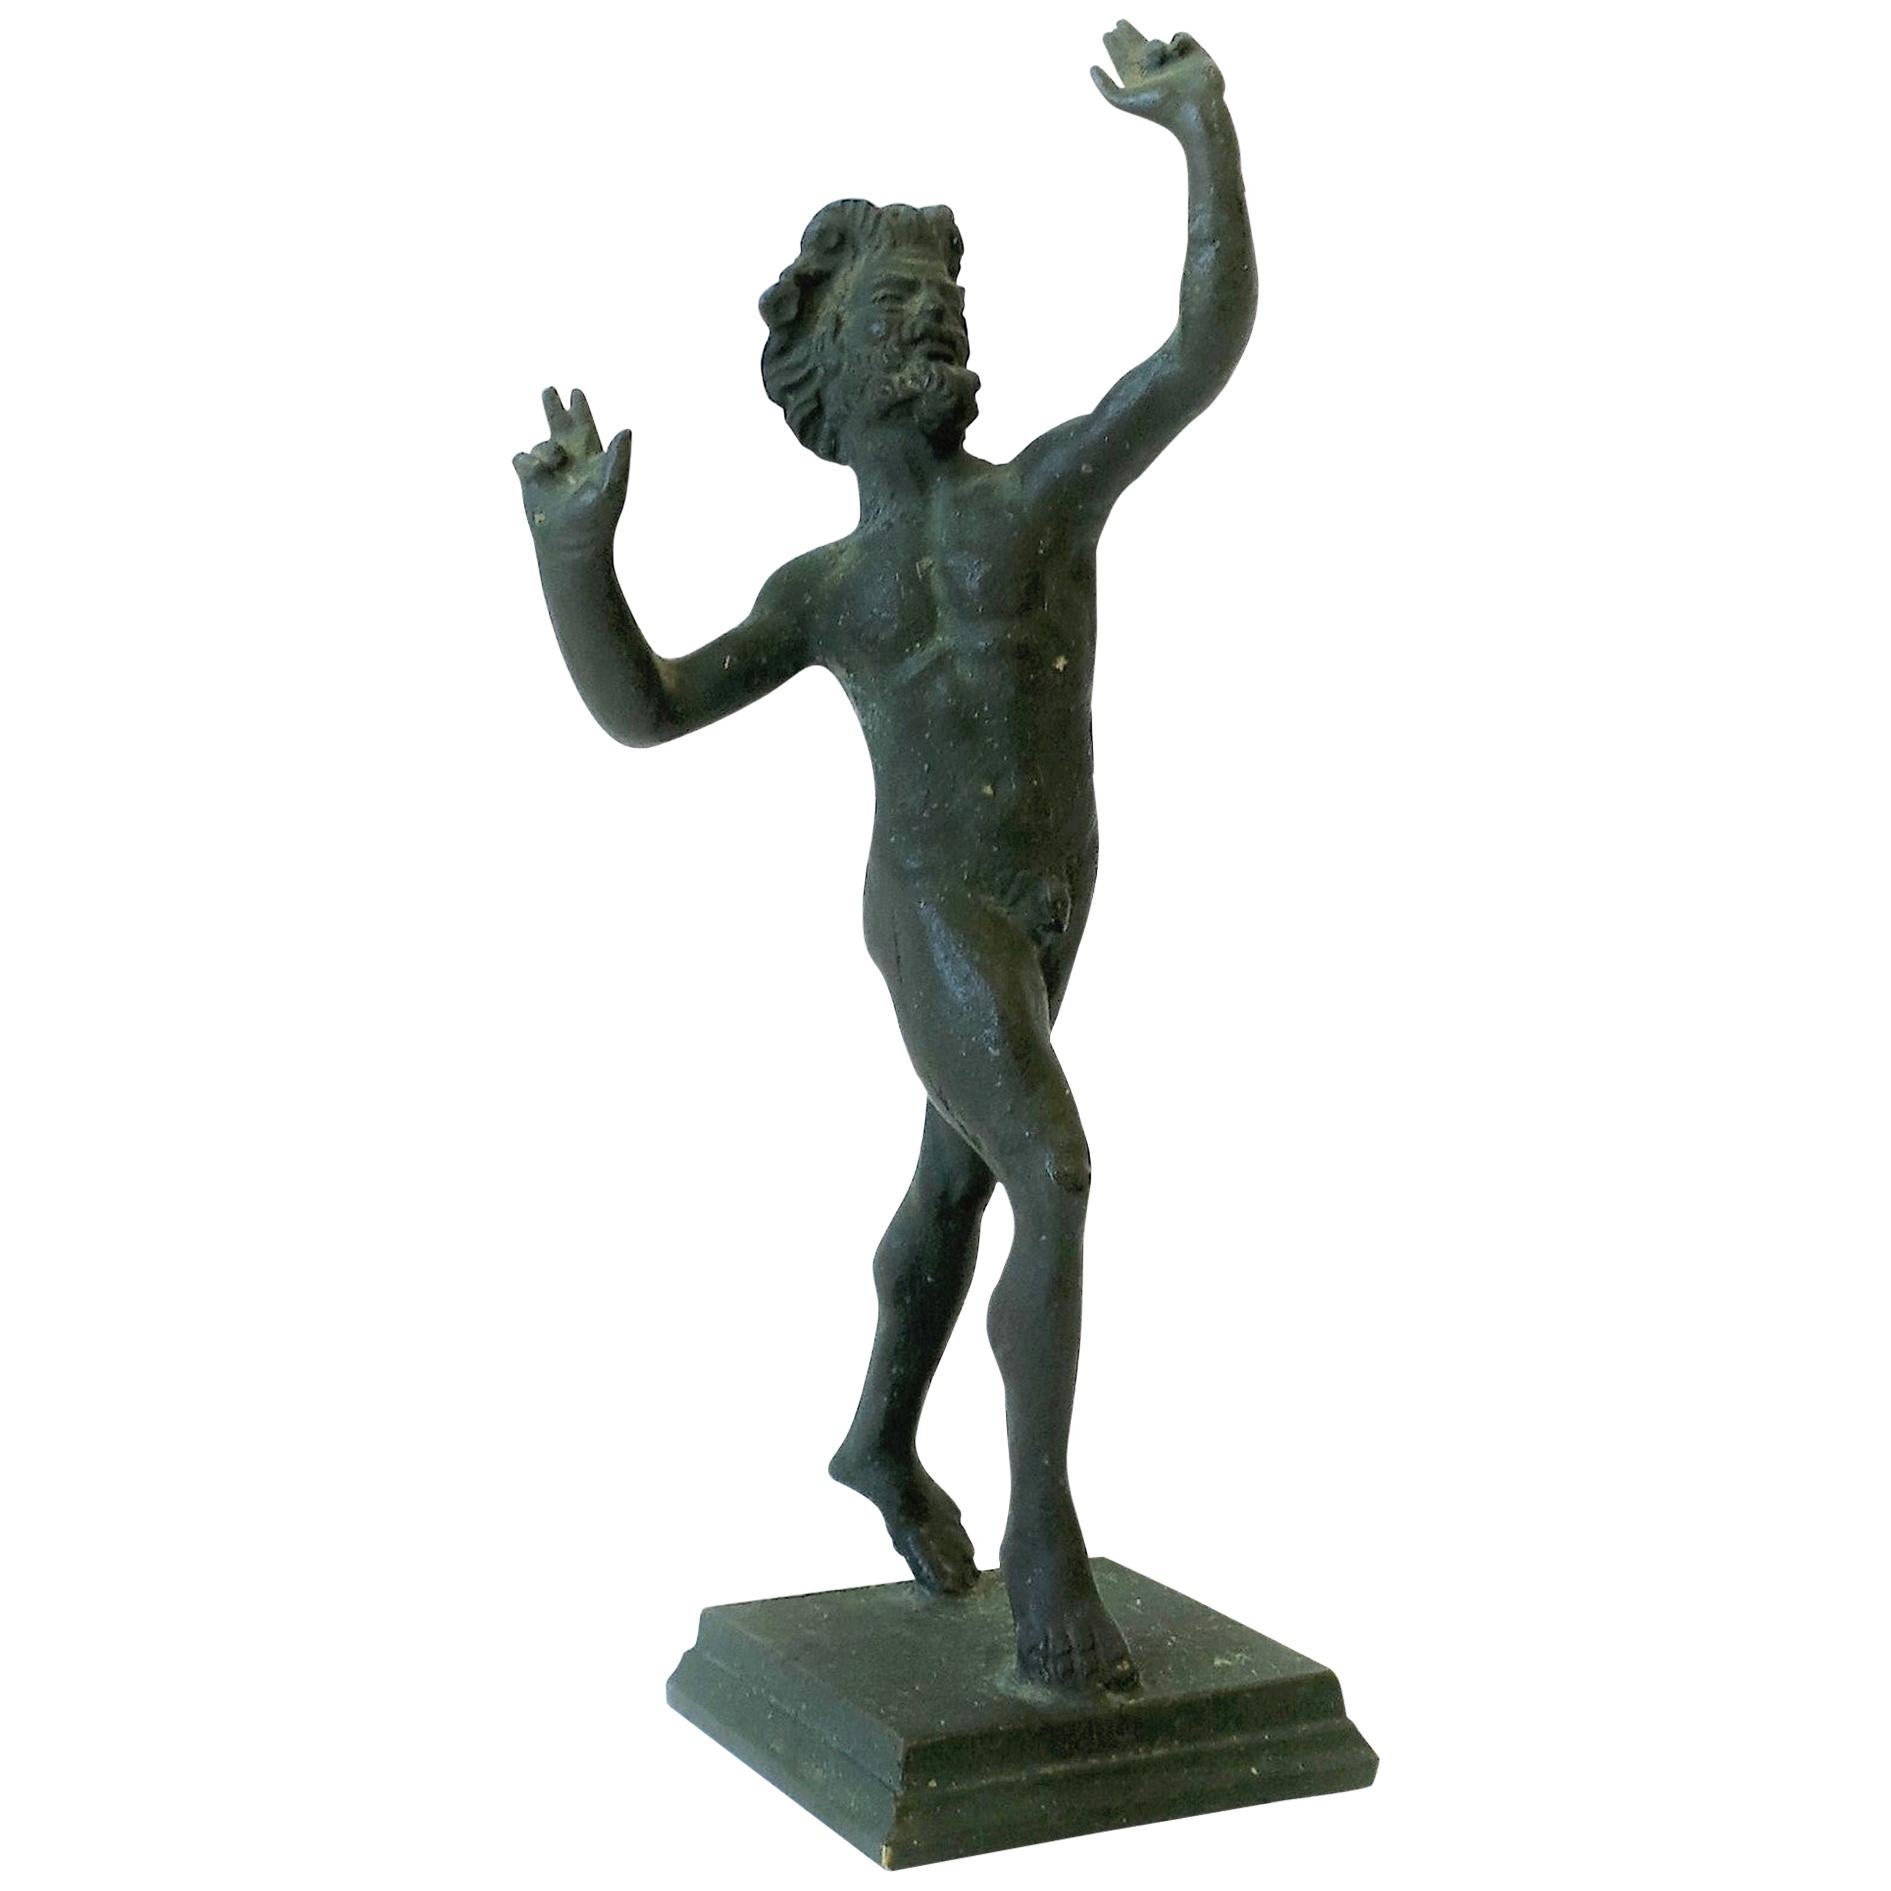 Statue figurative du dieu du vin grec Bacchus nu